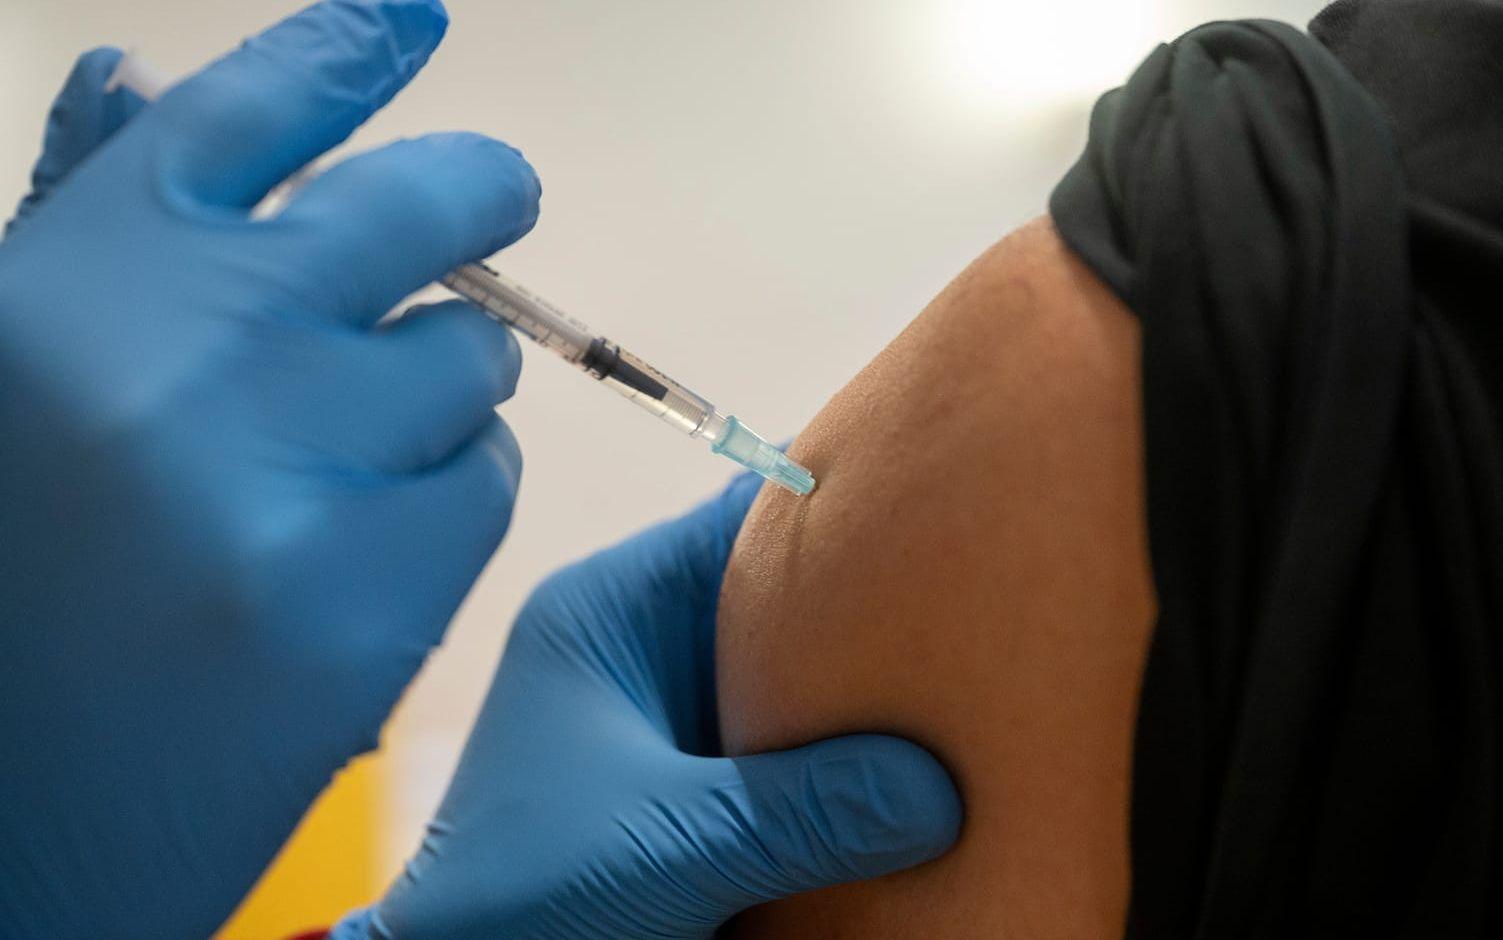 Vaccineringarna i Halland kommer att ta längre tid än planerat, bland annat till följd av att leveranserna av vaccin blivit mindre än vad som sagts tidigare.